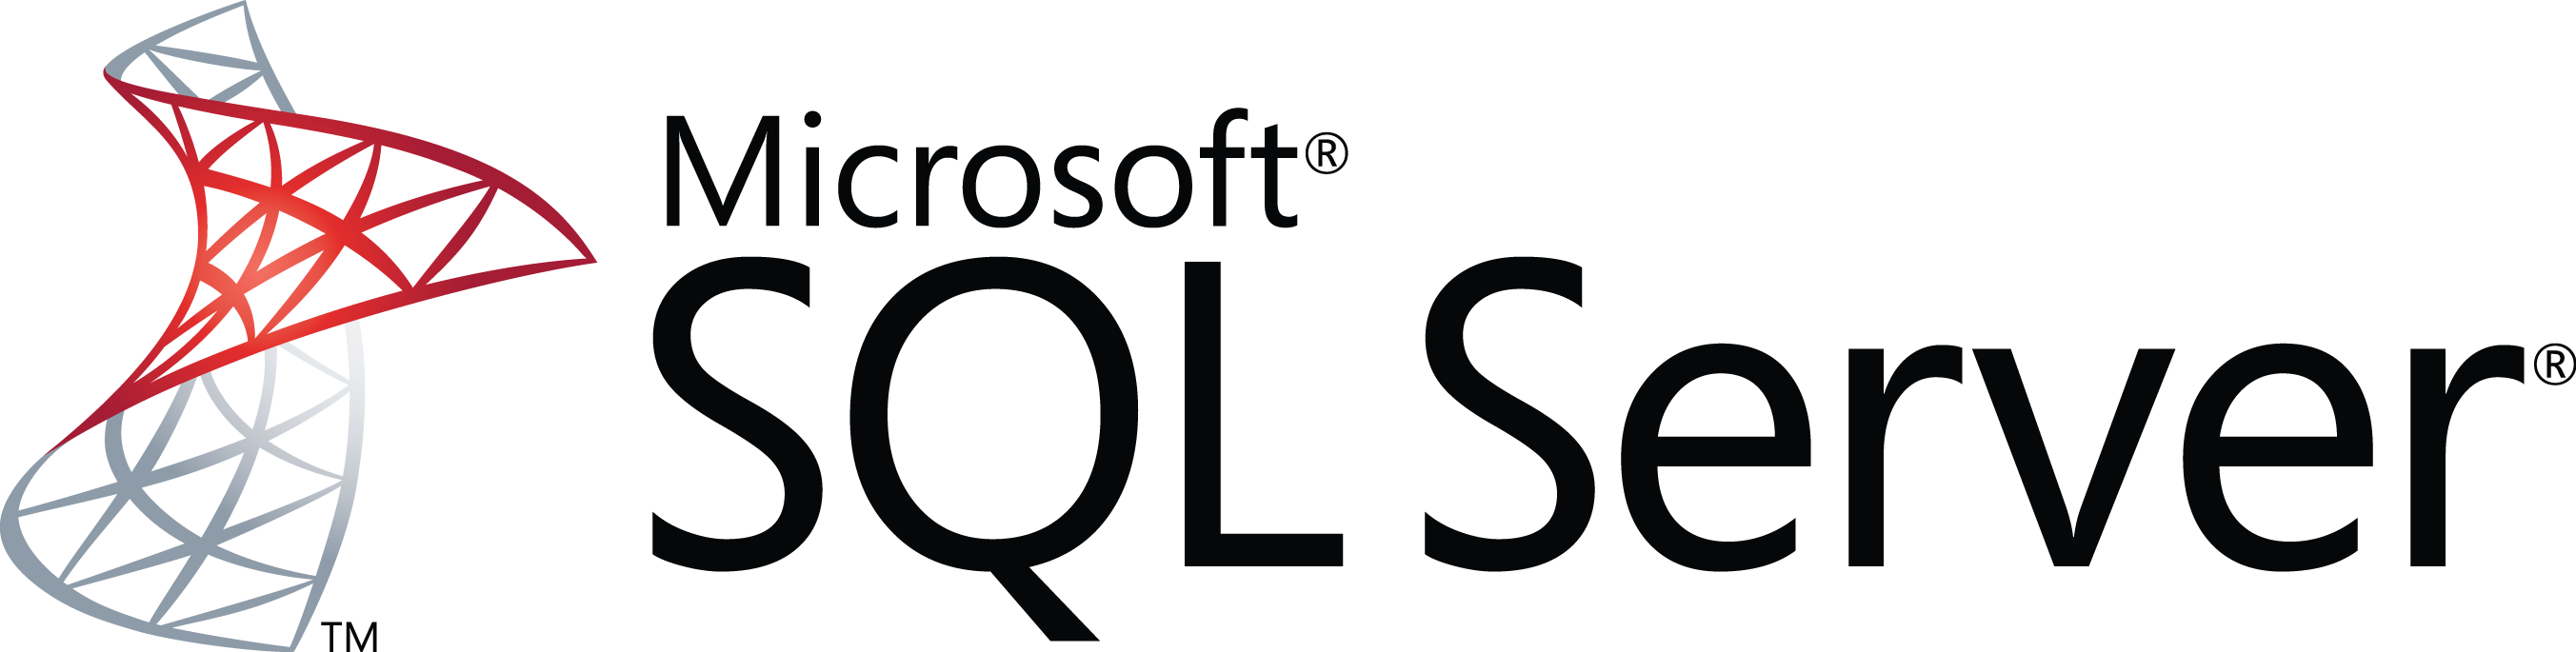 Microsoft SQL Server 2014: bliżej chmury